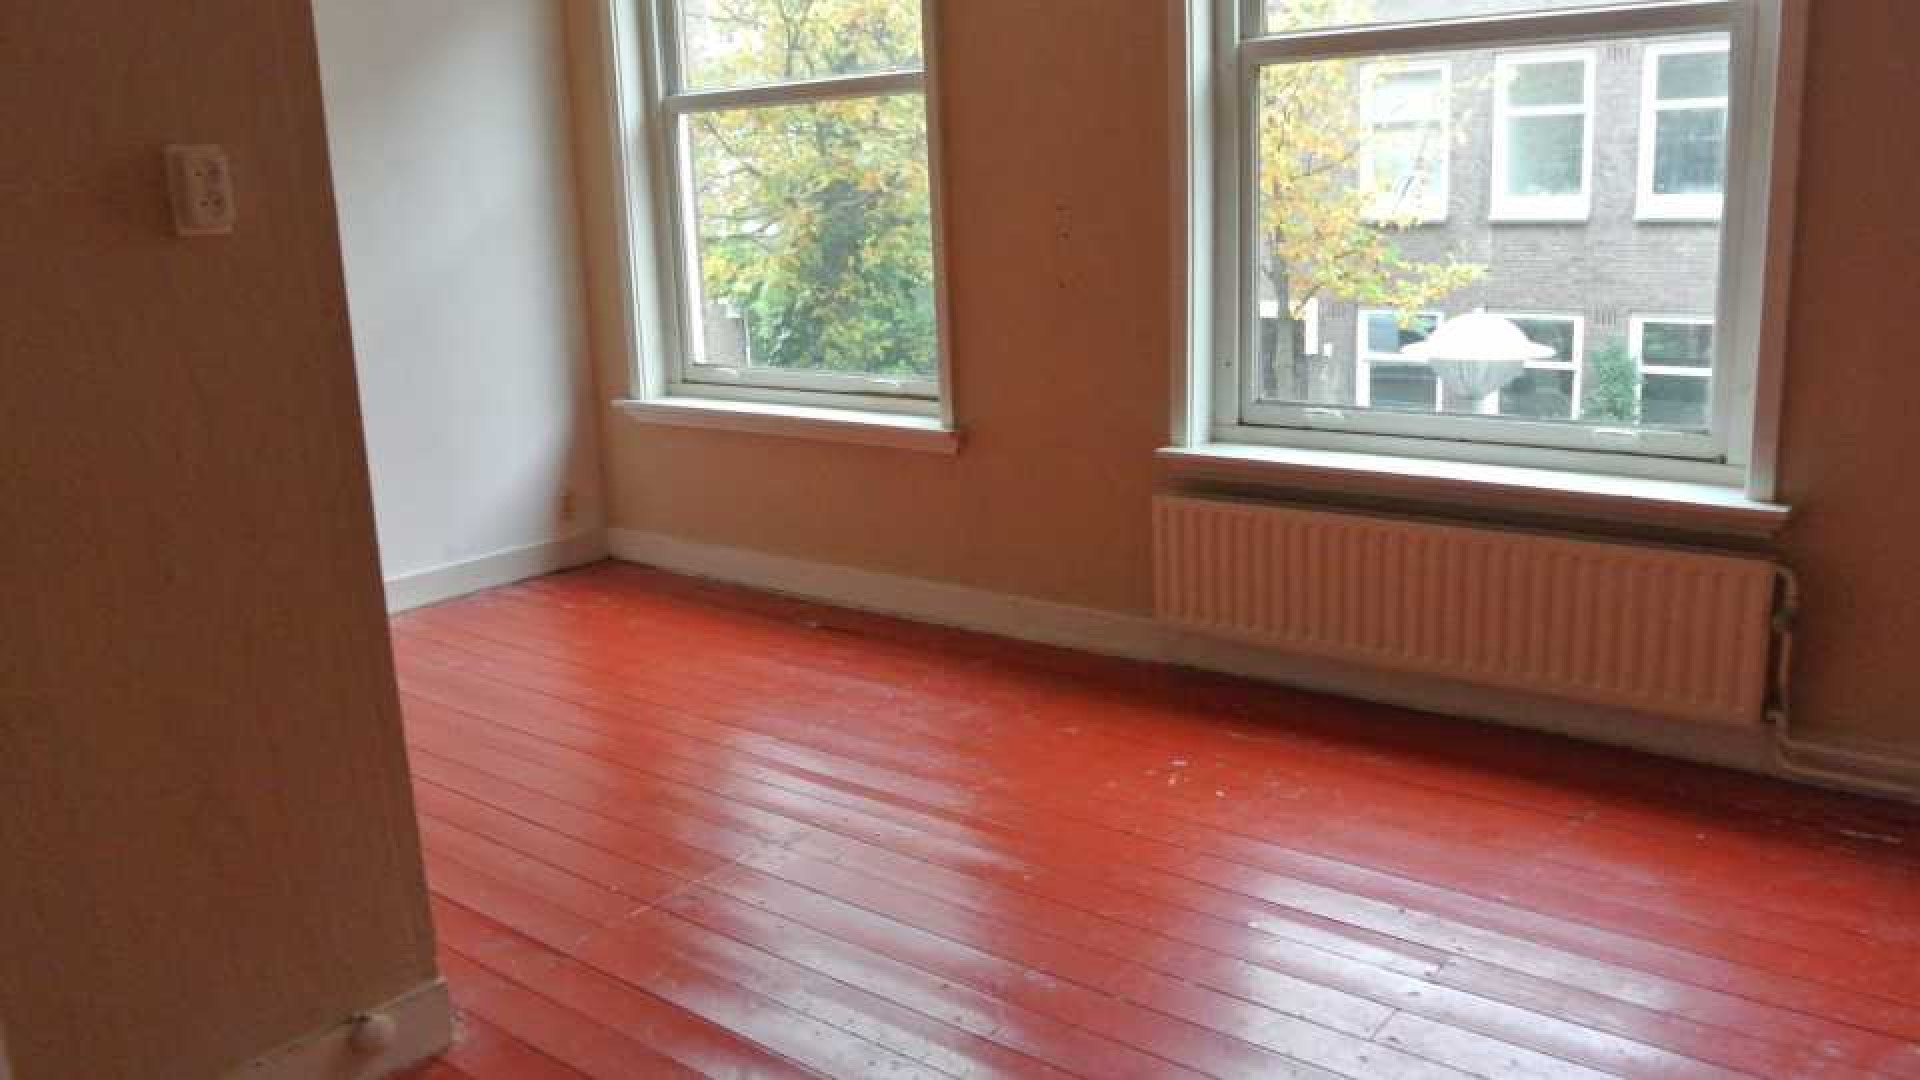 Reinout Oerlemans zet zijn appartement in Amsterdam Zuid te huur. Zie foto's